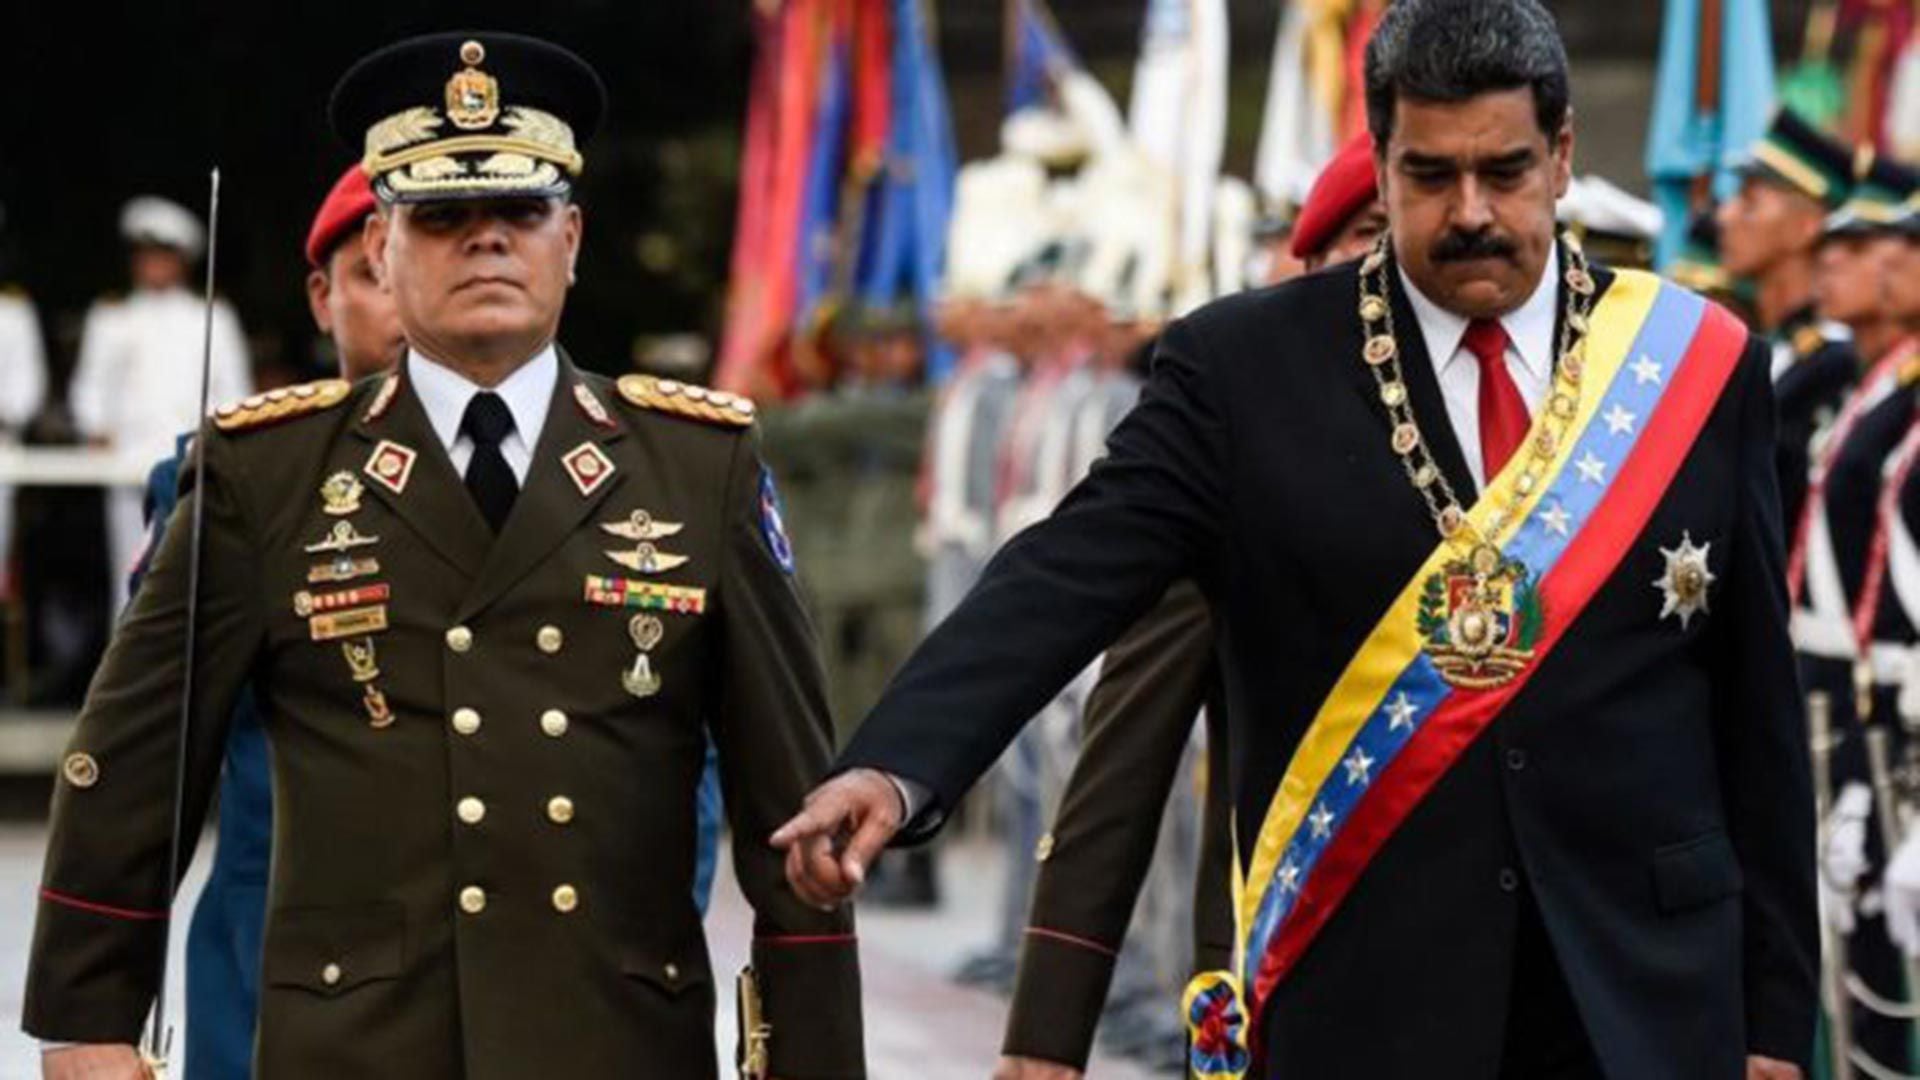 Las violaciones a los derechos humanos perpetradas por agentes estatales y grupos paramilitares son llevadas a cabo por orden del dictador Maduro